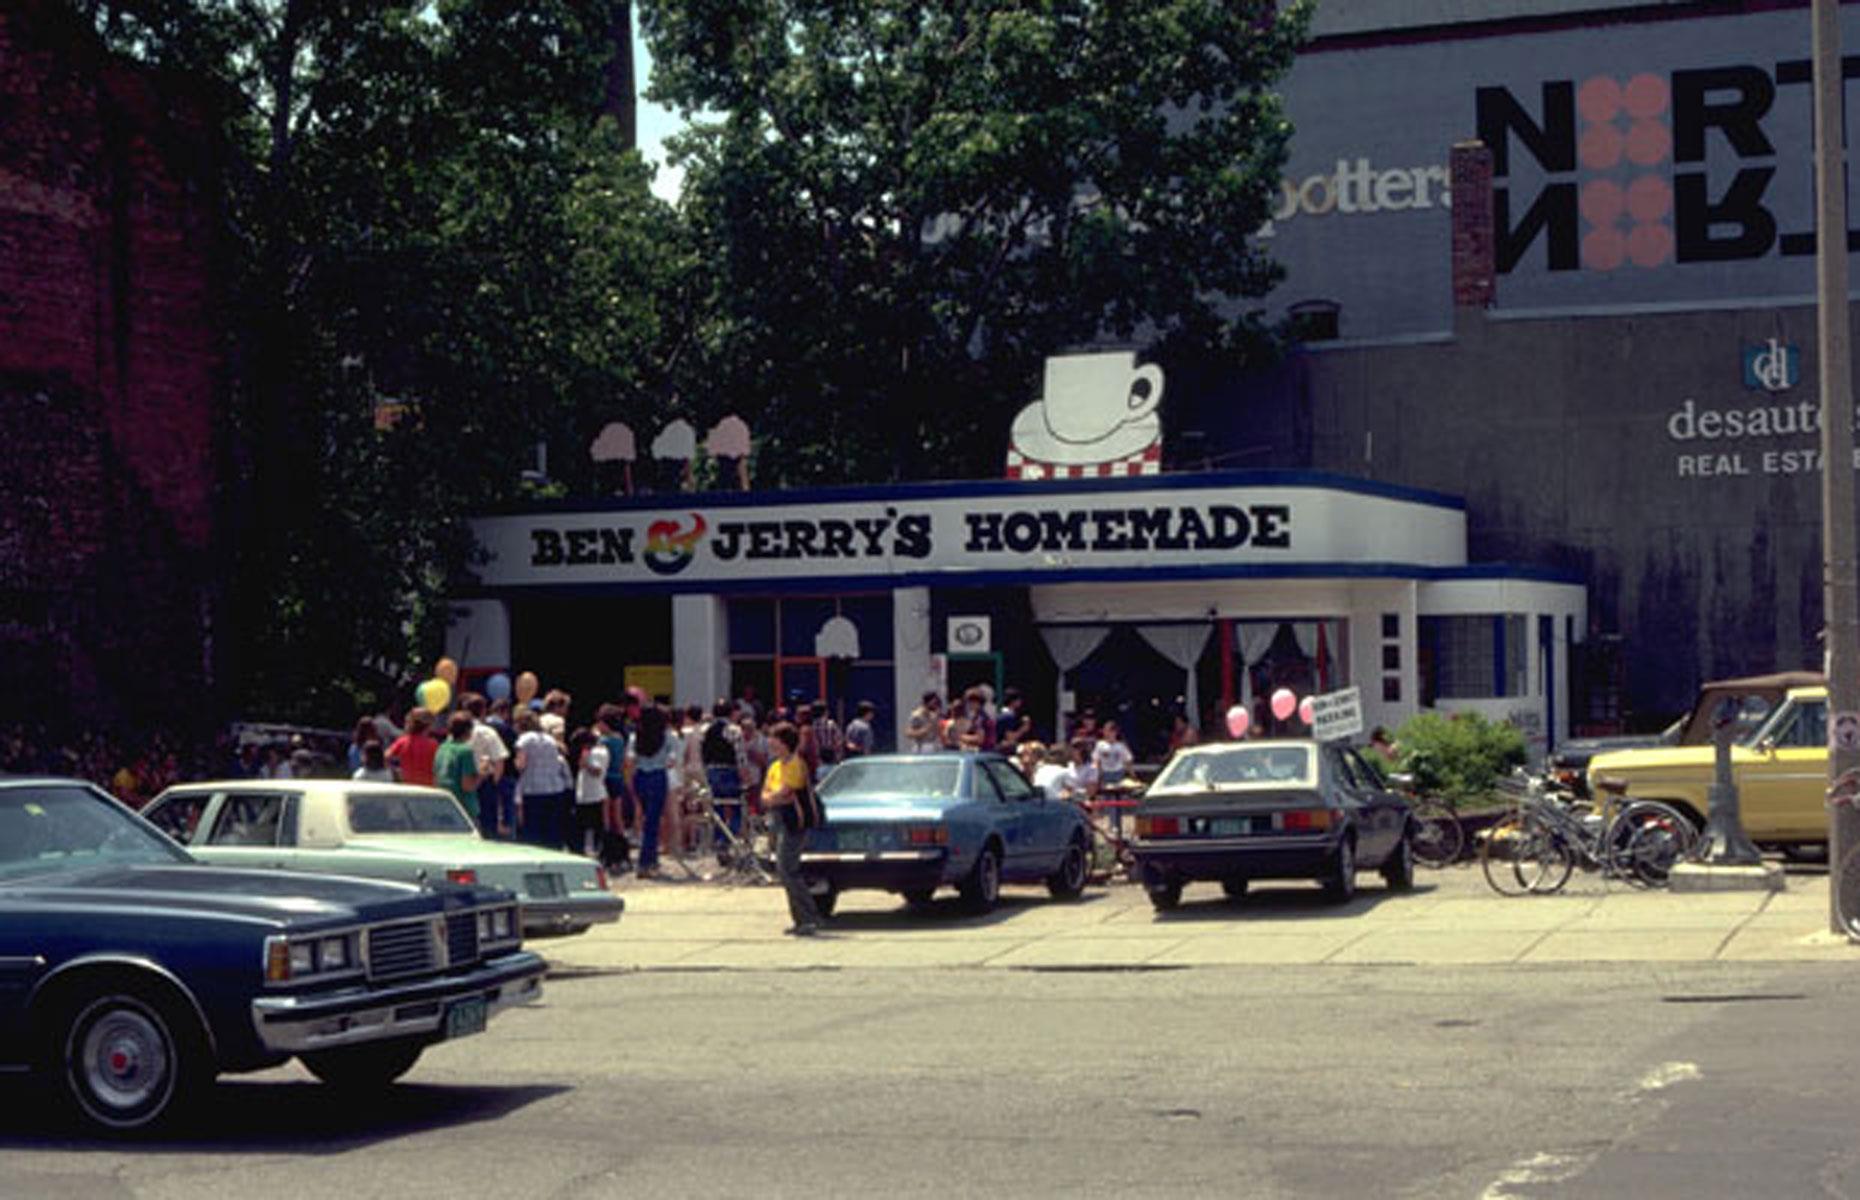 1978: Ben & Jerry's